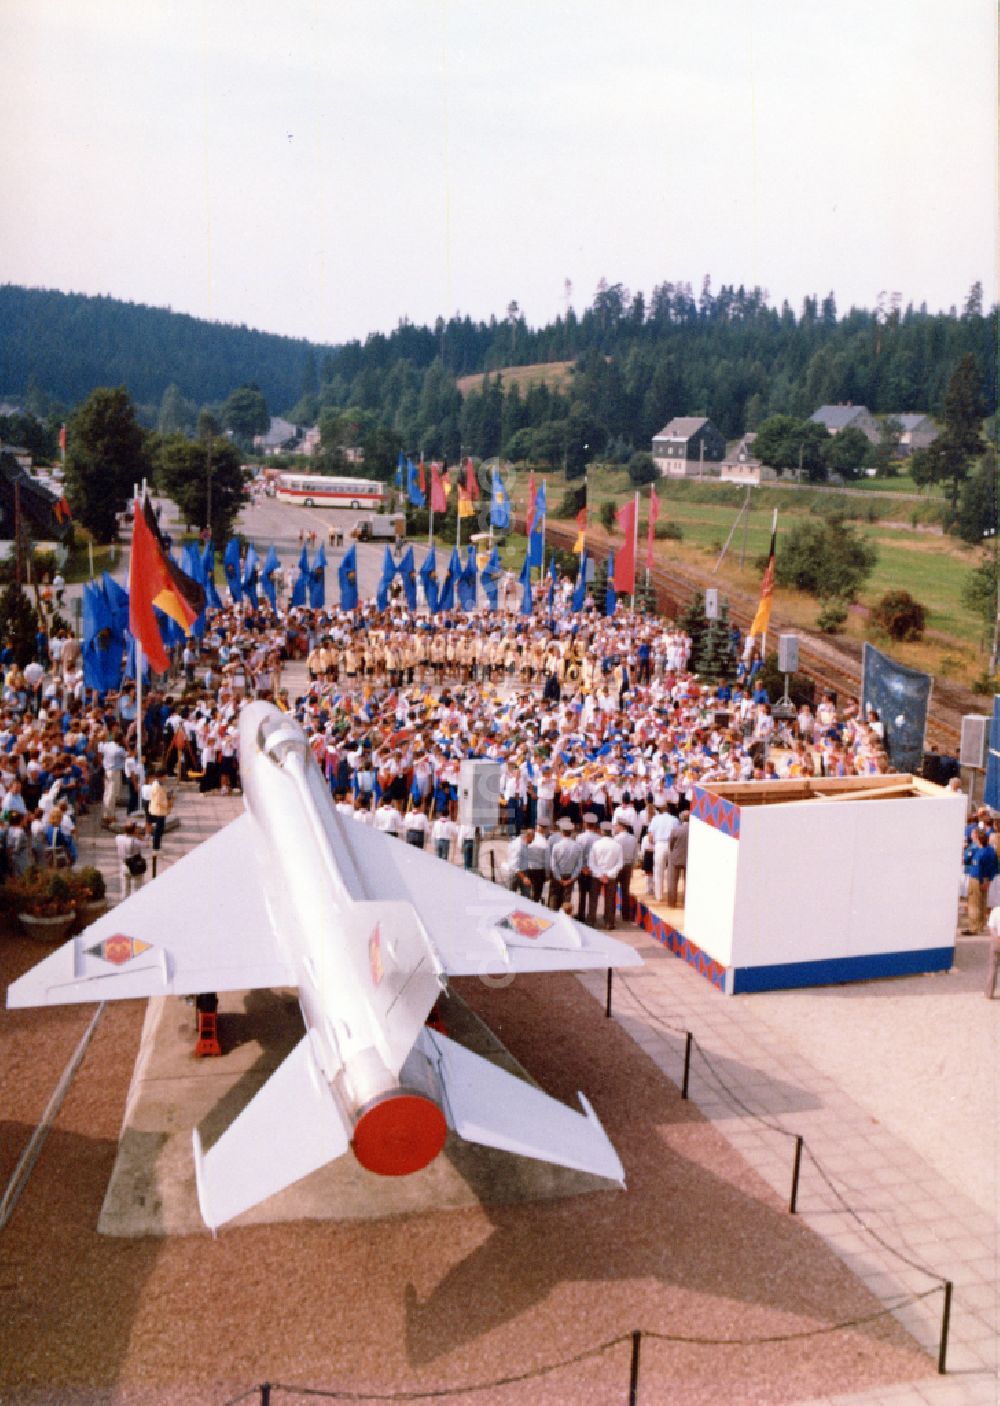 Morgenr 246 the Rautenkranz Pionier Veranstaltung an der Raumfahrt Gedenkst 228 tte mit einer MiG 21 